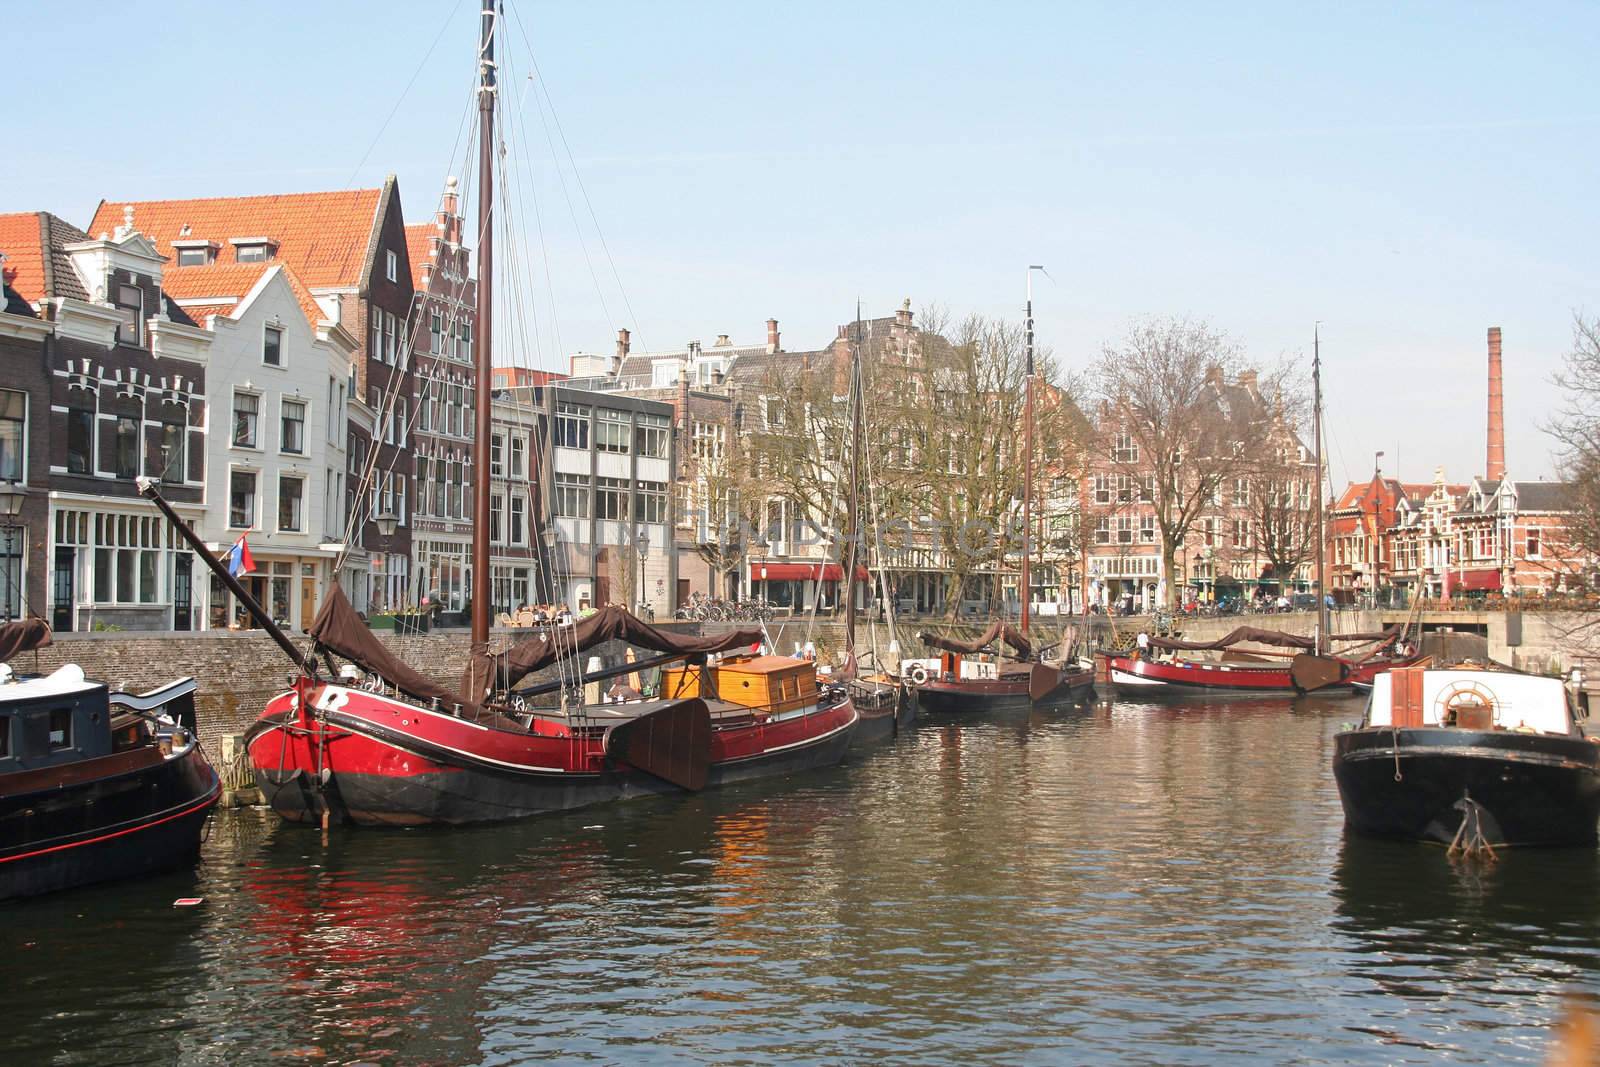 Historic Delfshaven area of Rotterdam